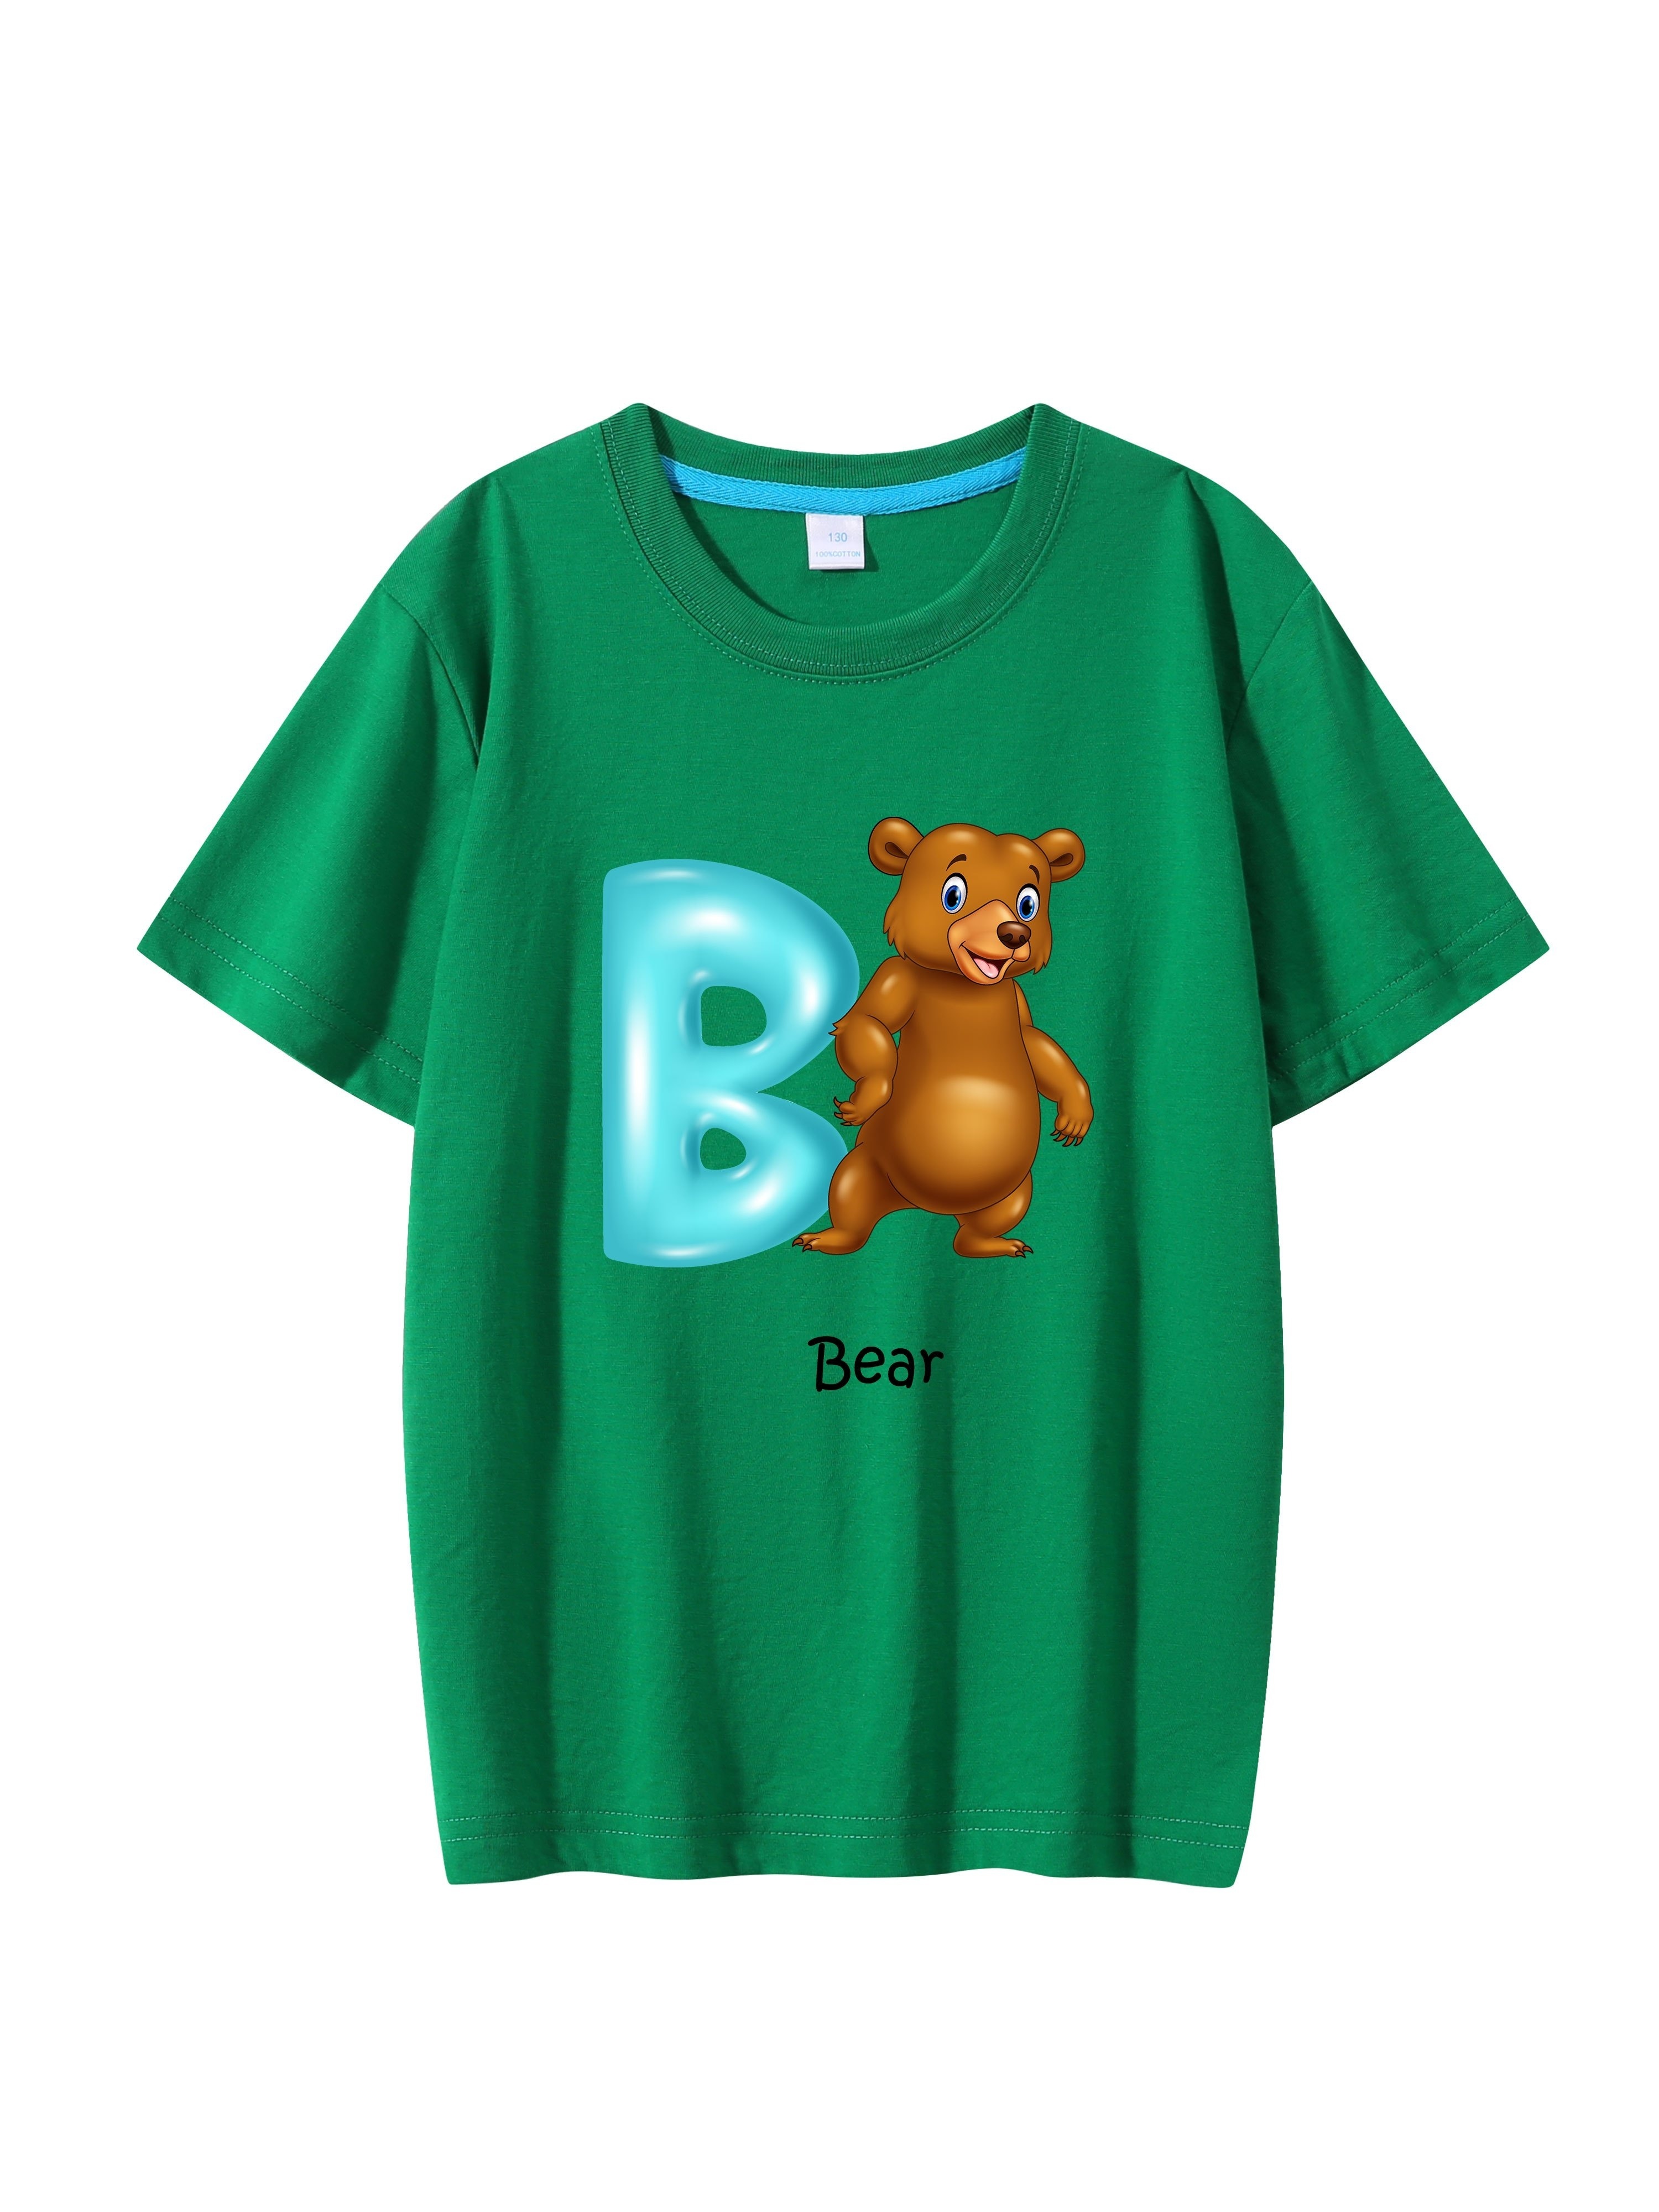 Kids Boys Cute Cartoon Print T-shirt Tops Summer Short Sleeve Tee Shirt